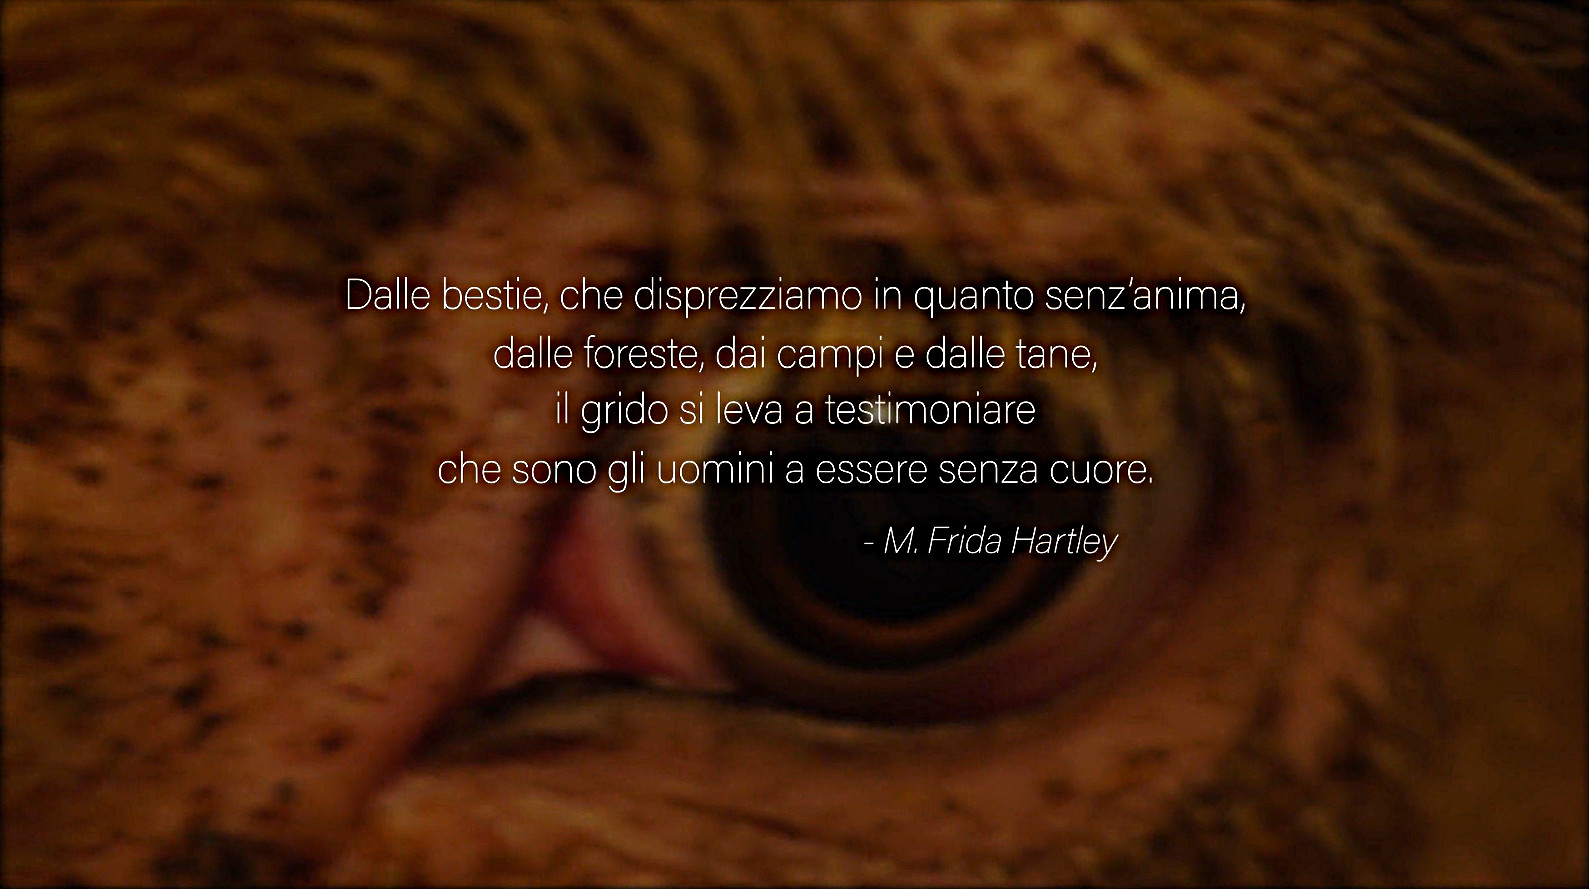 CLICCA QUI PER VEDERE IL VIDEO "Dominion (in italiano), documentario sulle sofferenze animali"